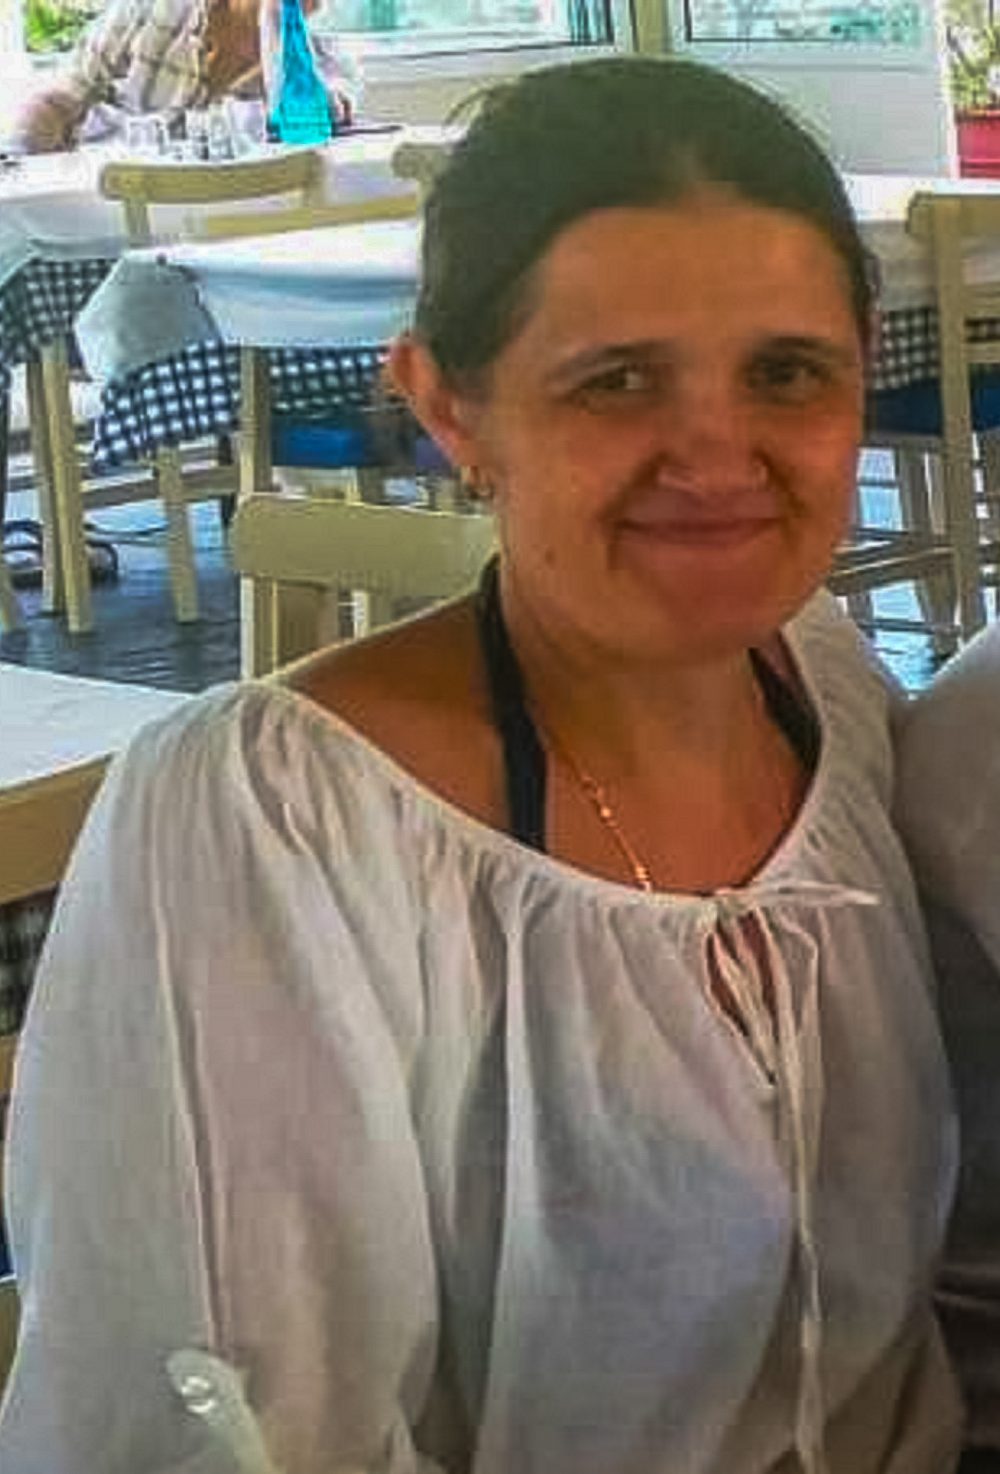 Cristina Oancea